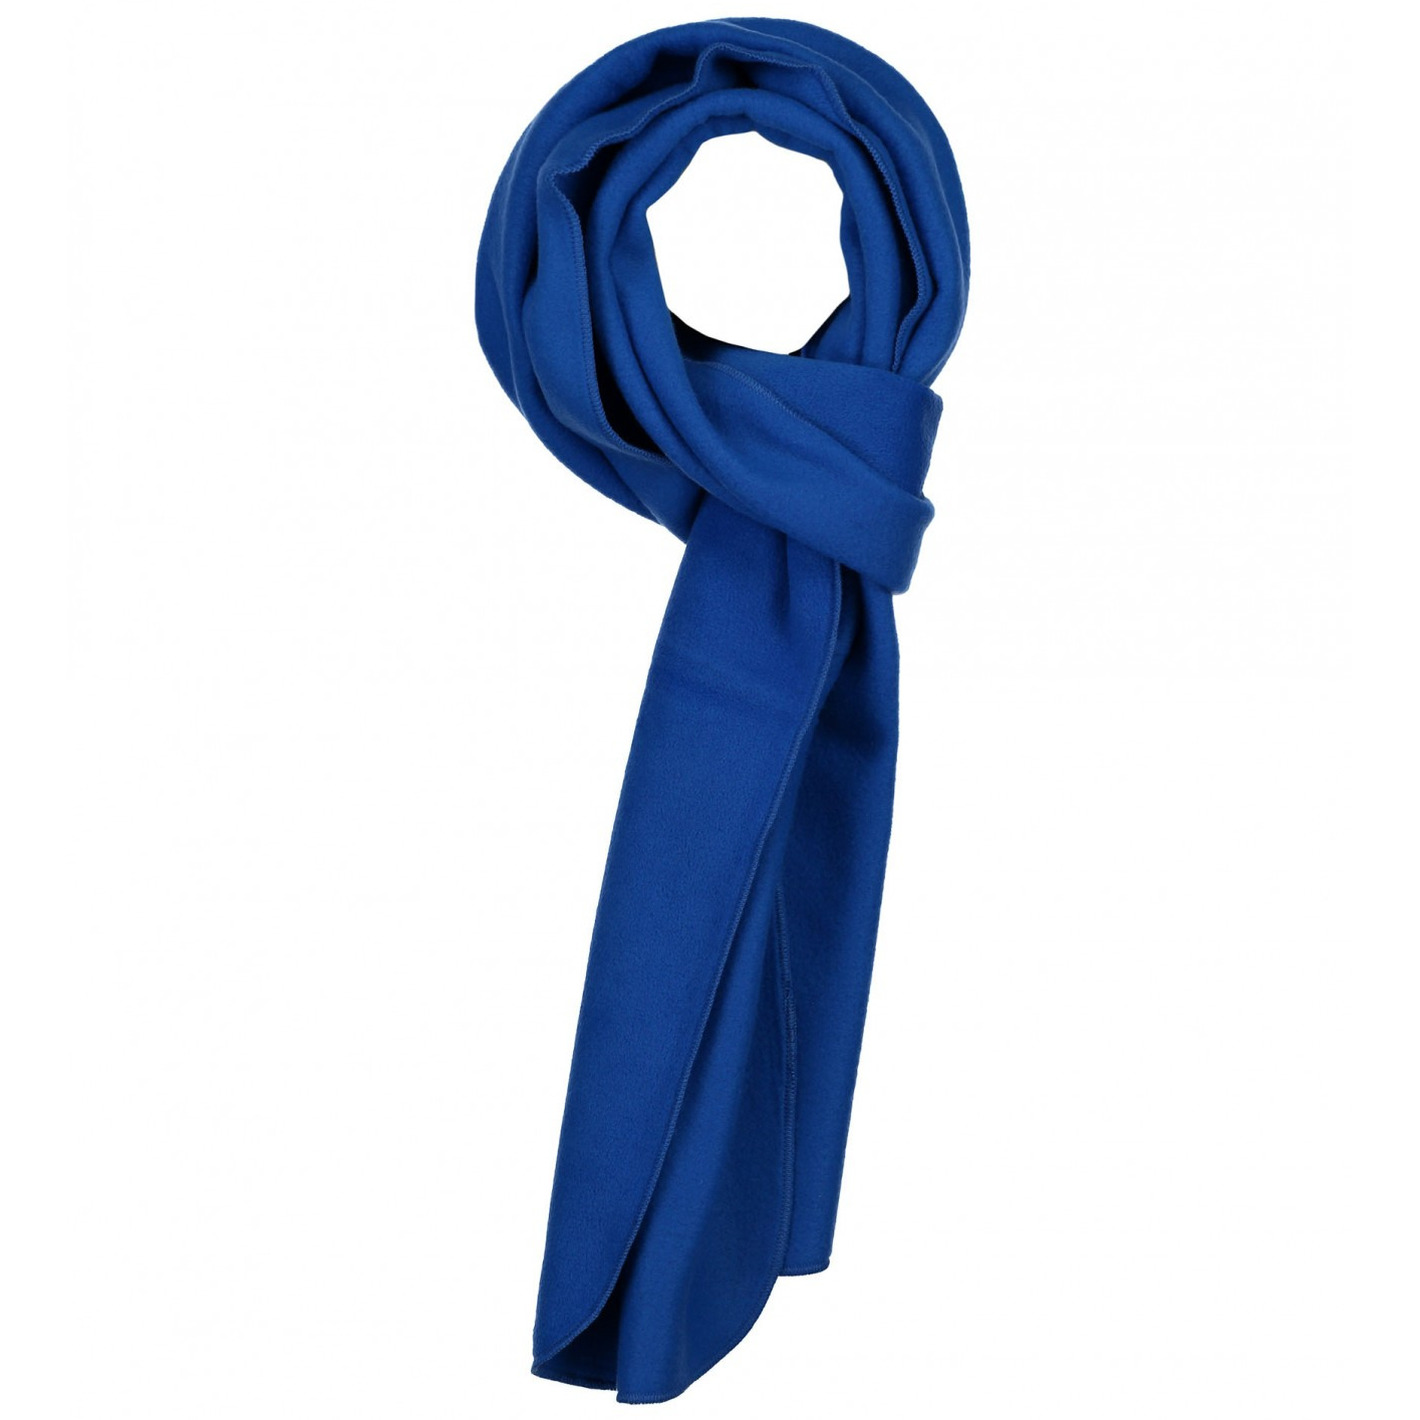 Warme fleece sjaals kobalt blauw